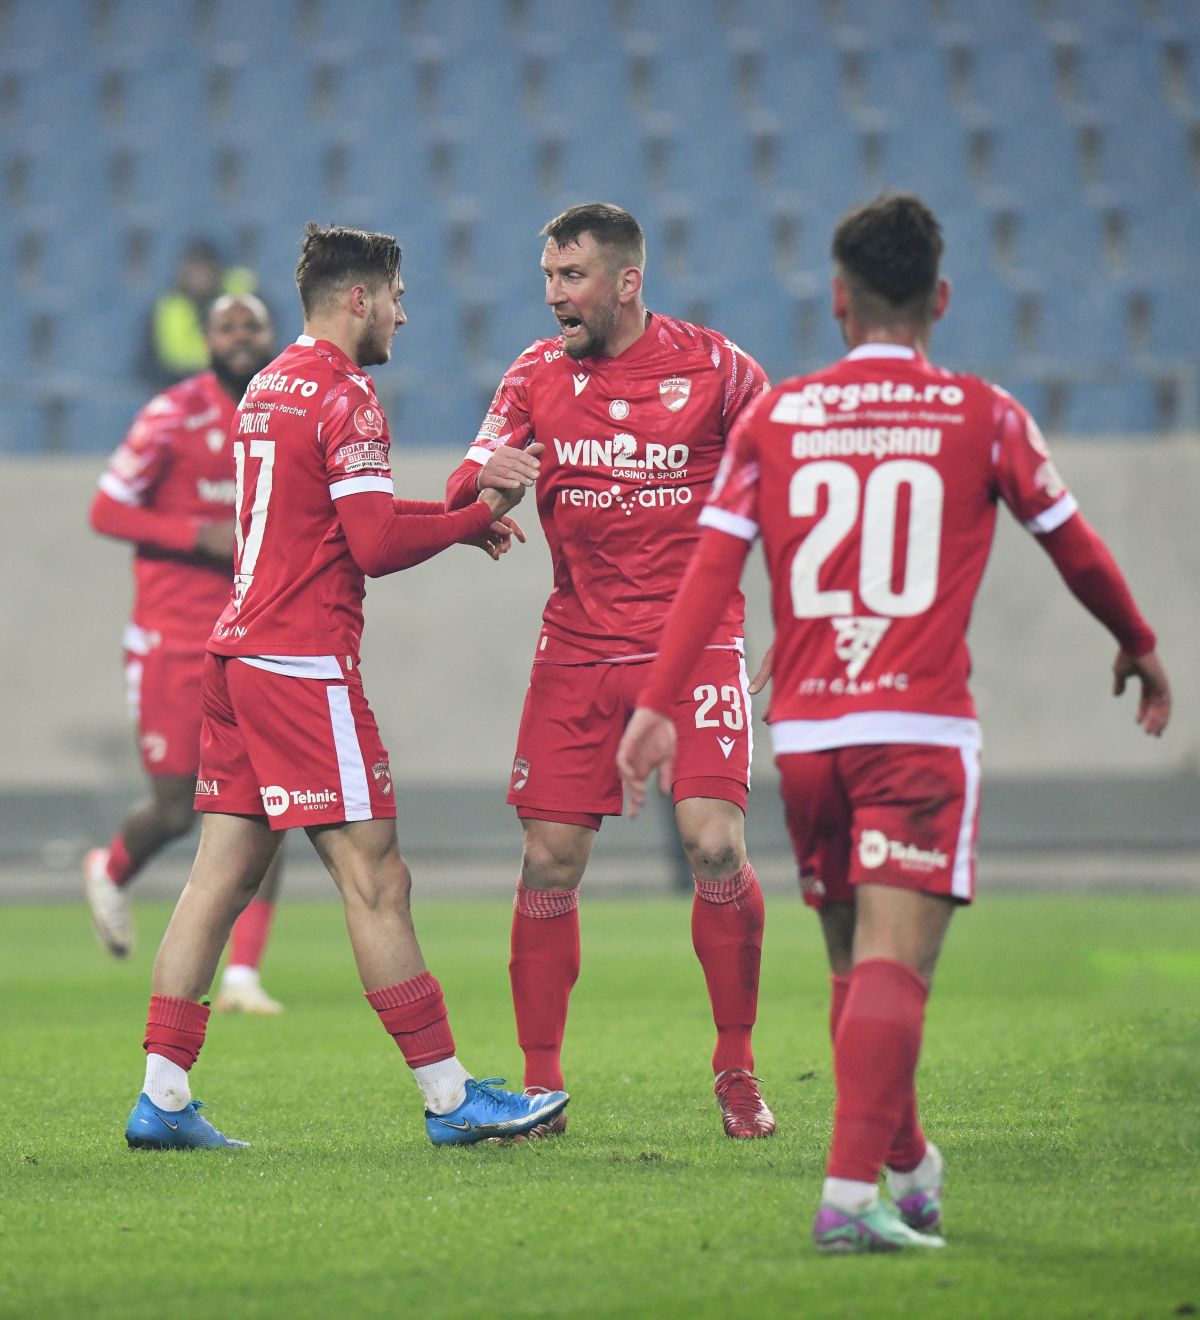 N-a uitat de unde a plecat! Fostul golgheter al Ligii 1, prezent la FCU Craiova - Dinamo: „Play-off-ul e greu, dar vreau Cupa”